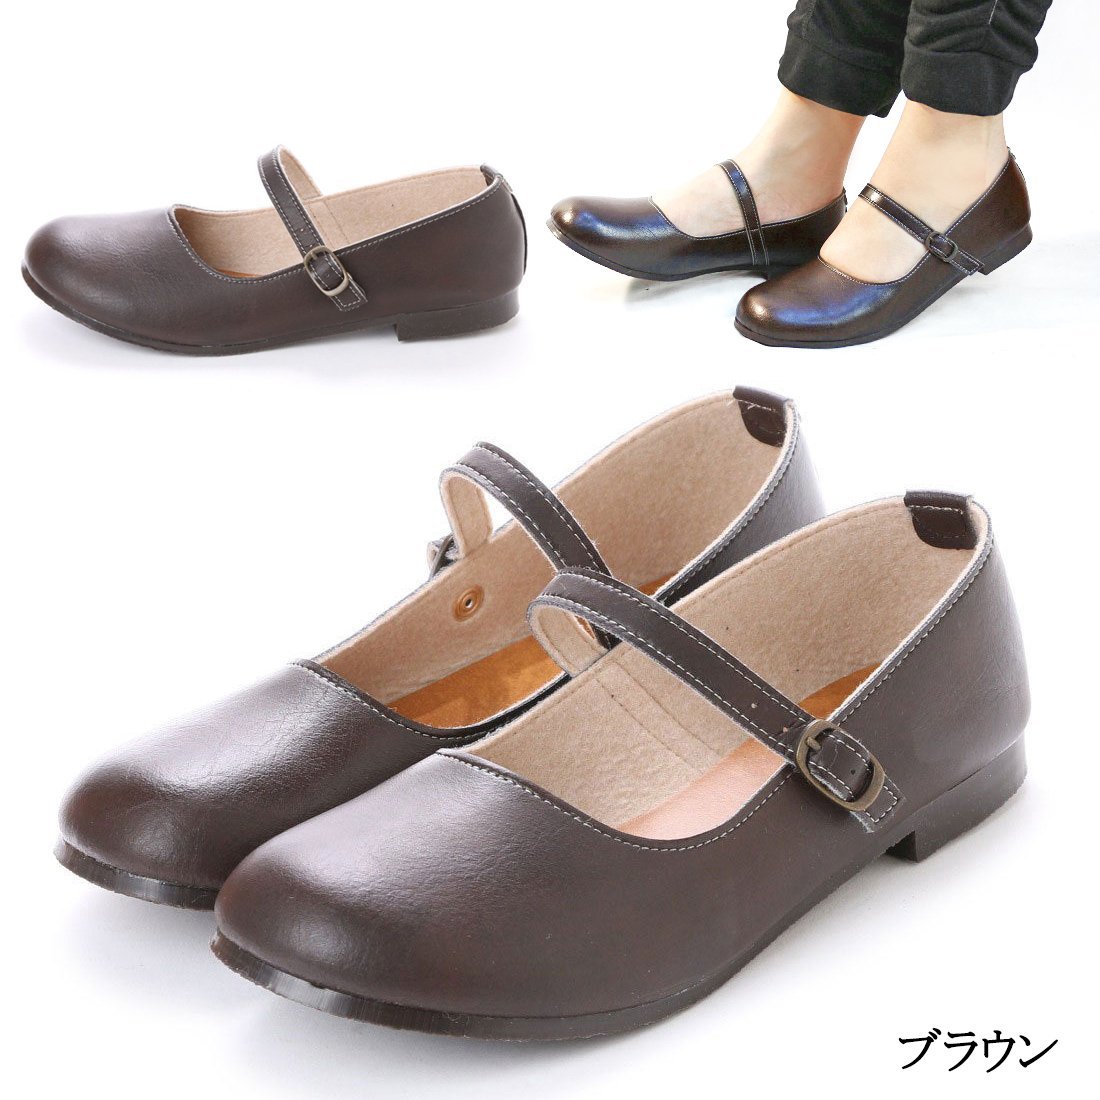 42lk бесплатная доставка по всей стране (25.5~26cm) сделано в Японии one ремешок туфли-лодочки / Brown 